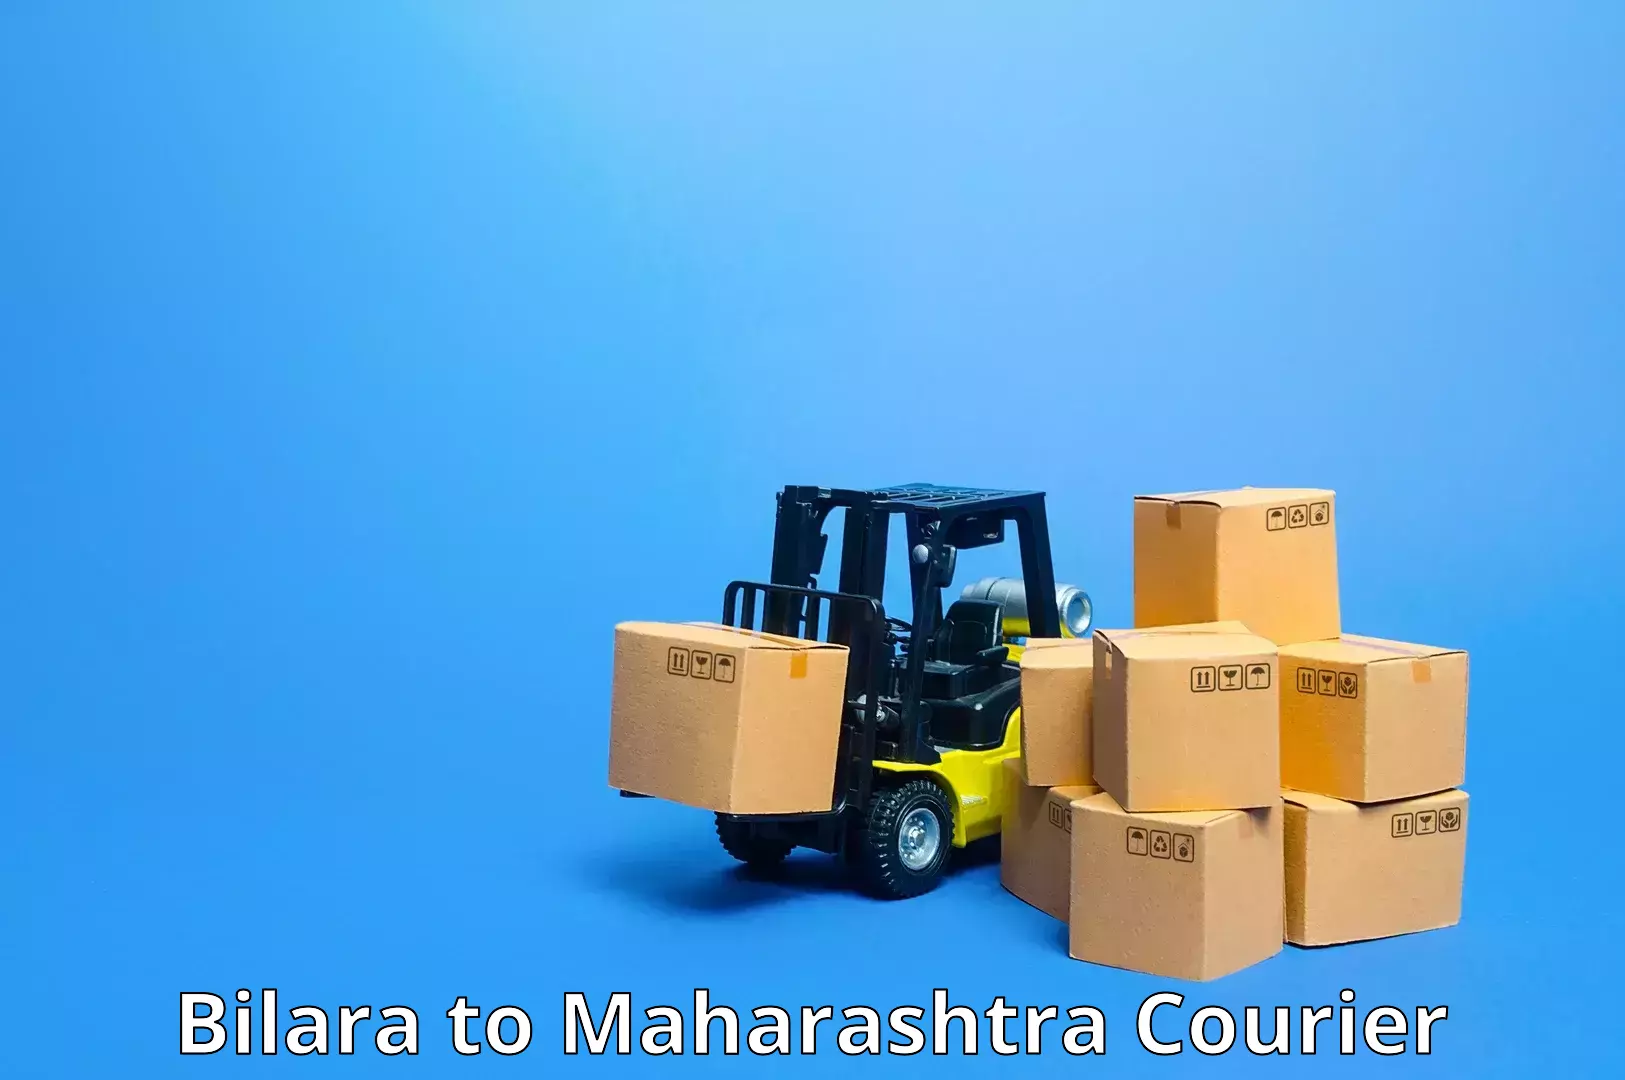 Business shipping needs Bilara to Maharashtra